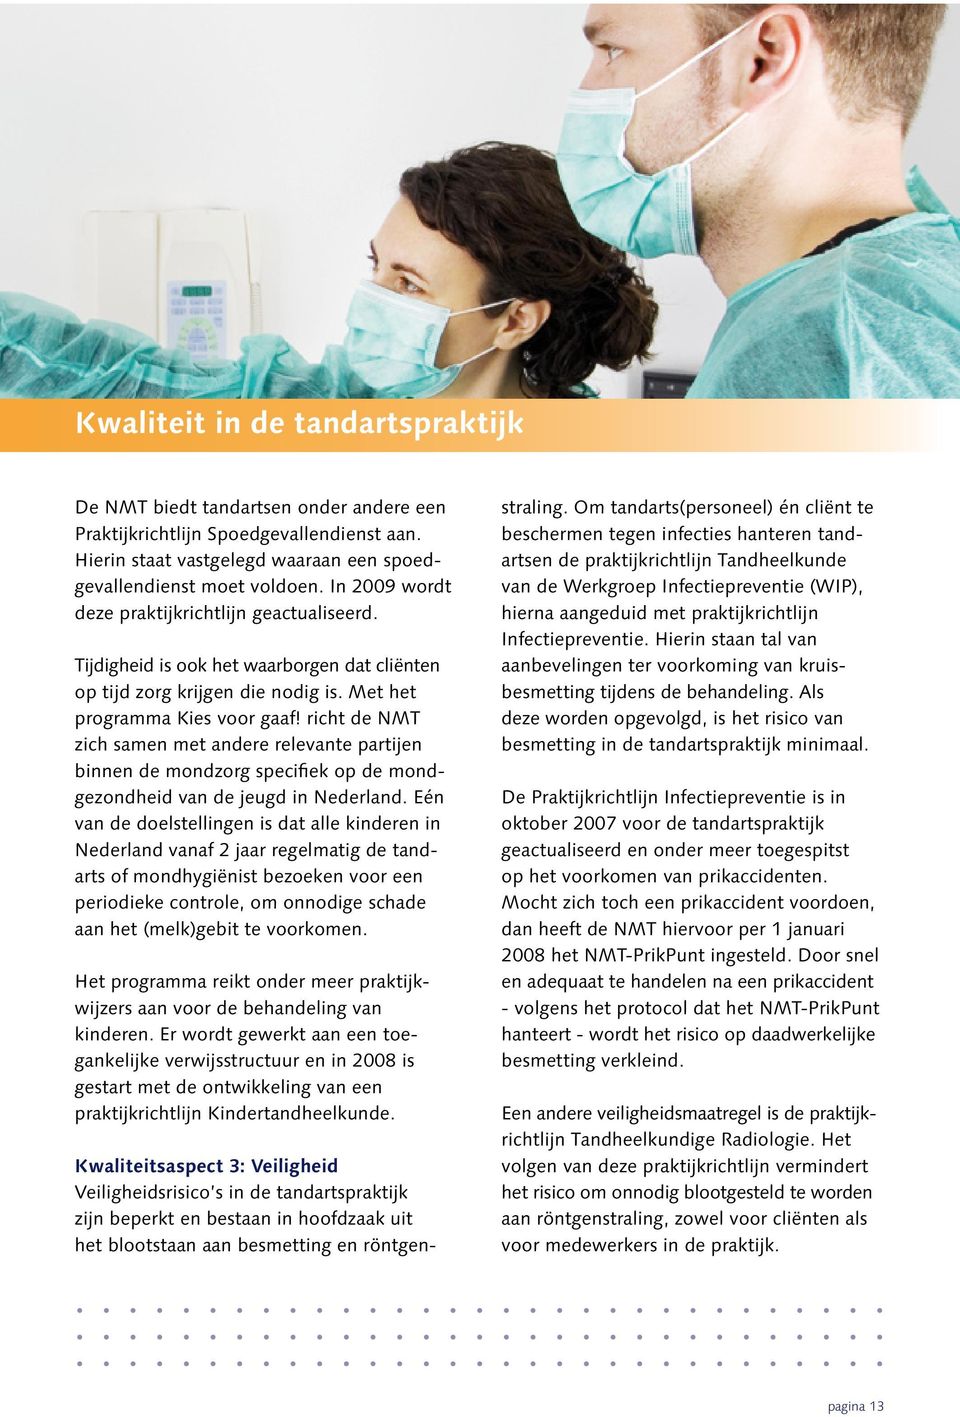 richt de NMT zich samen met andere relevante partijen binnen de mondzorg specifiek op de mondgezondheid van de jeugd in Nederland.